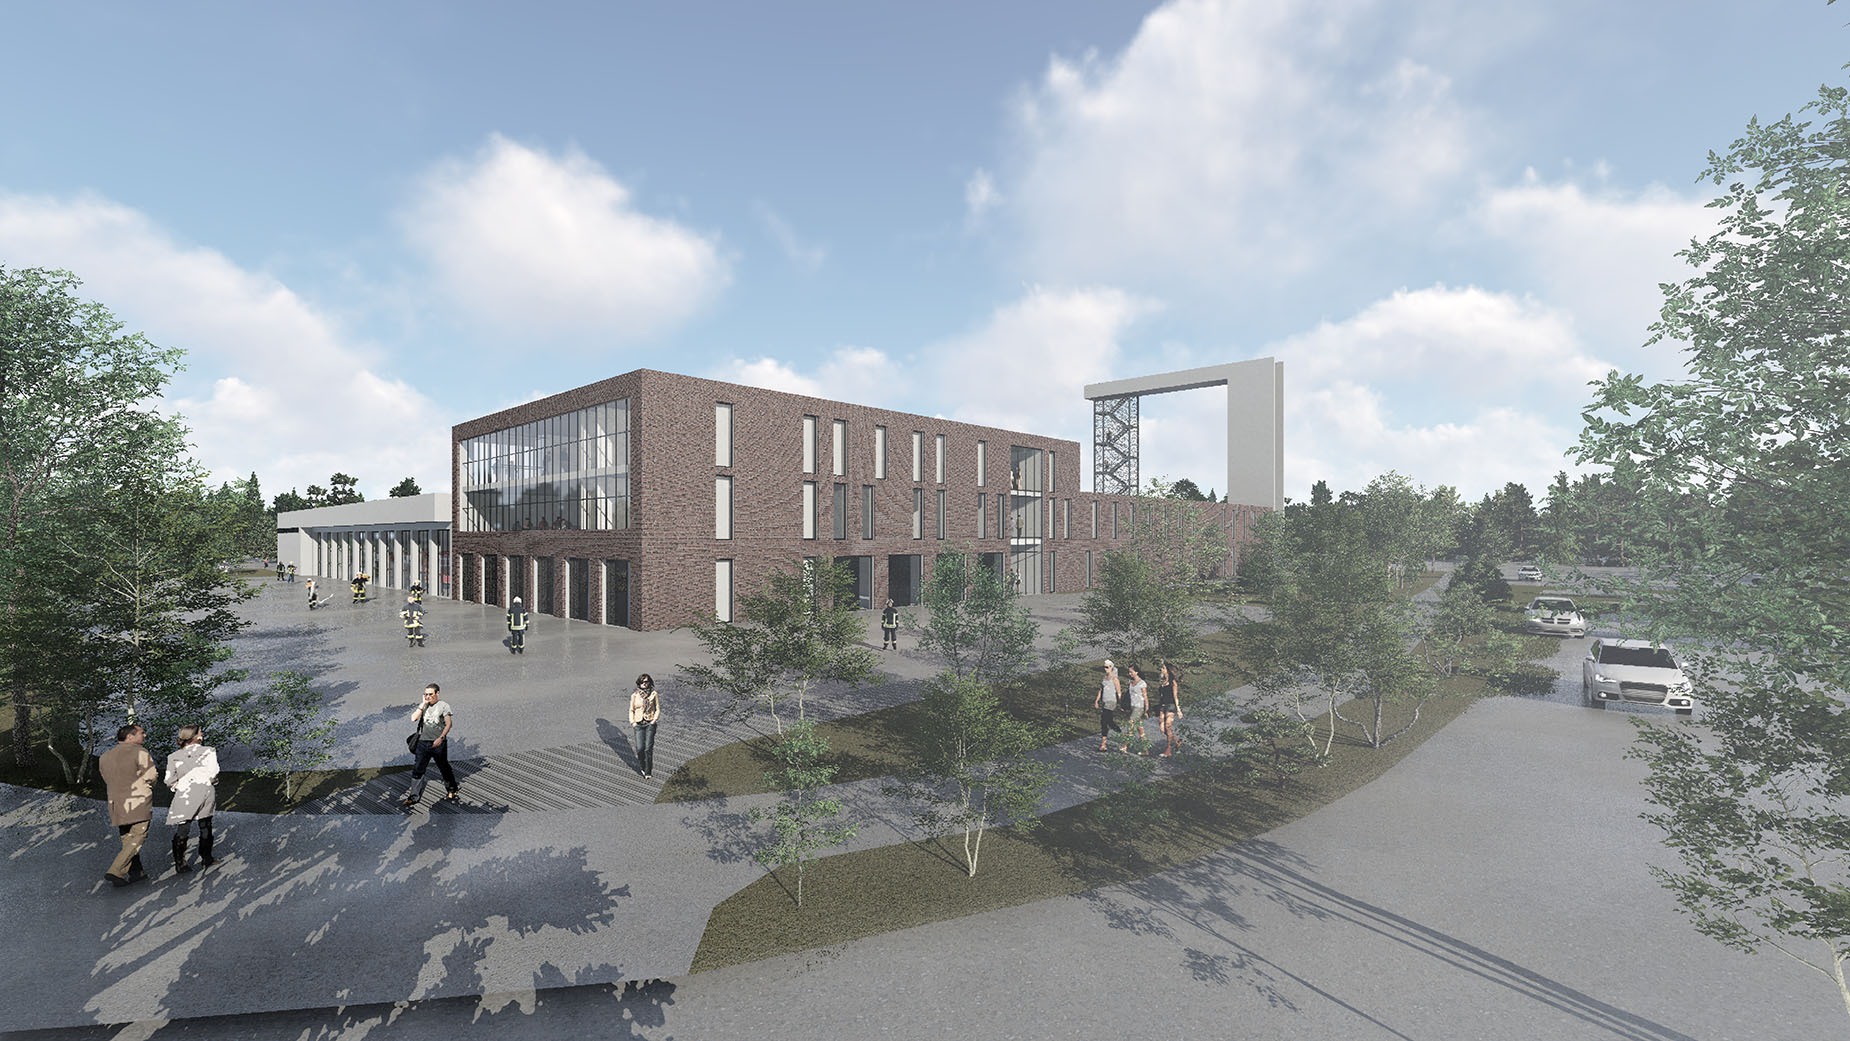 Architekturwettbewerb für den Neubau eines Feuerwehrtechnischen Zentrums in Nordhausen für die Städtische Wohnungsbaugesellschaft mbH (SWG).